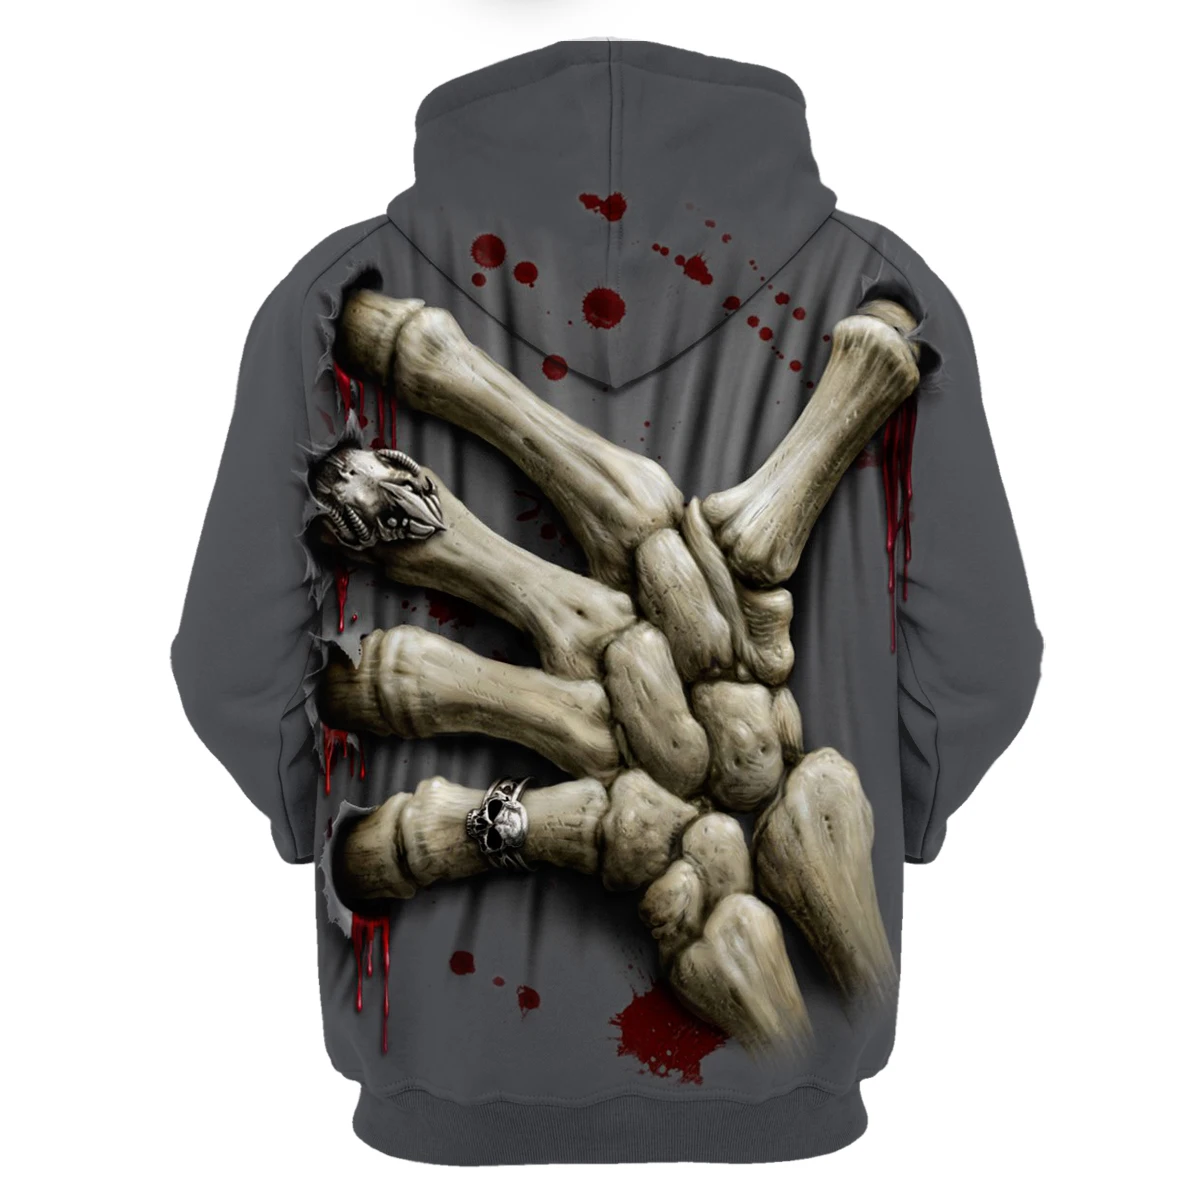 Druk marki hddhhh 3D nadruk z czaszką mężczyźni bez pluszowych bluz garnitury modne gotyckie męskie dres obszerna bluza z kapturem